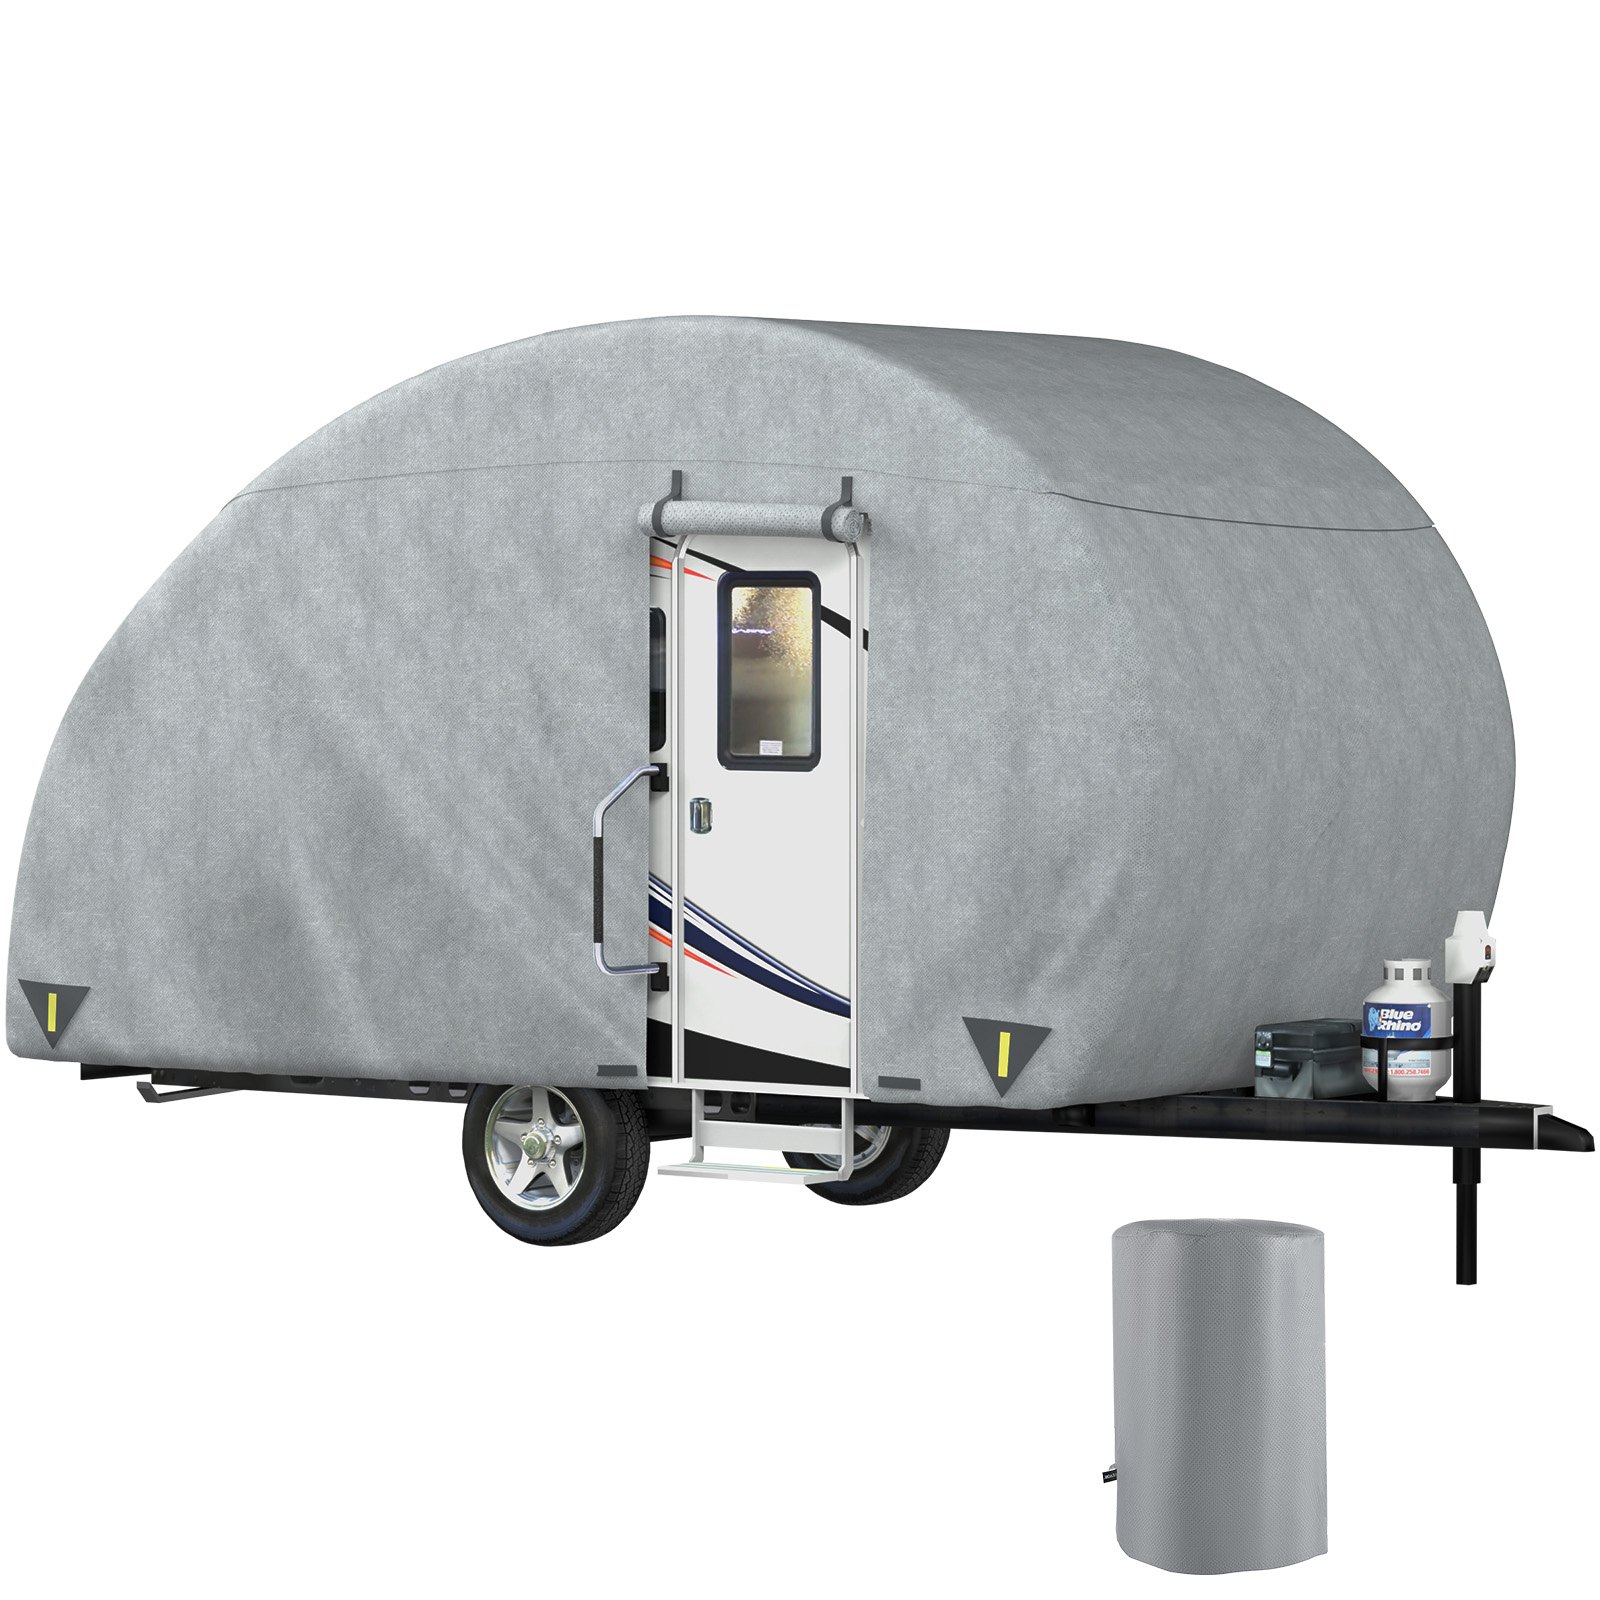 travel trailer covers waterproof